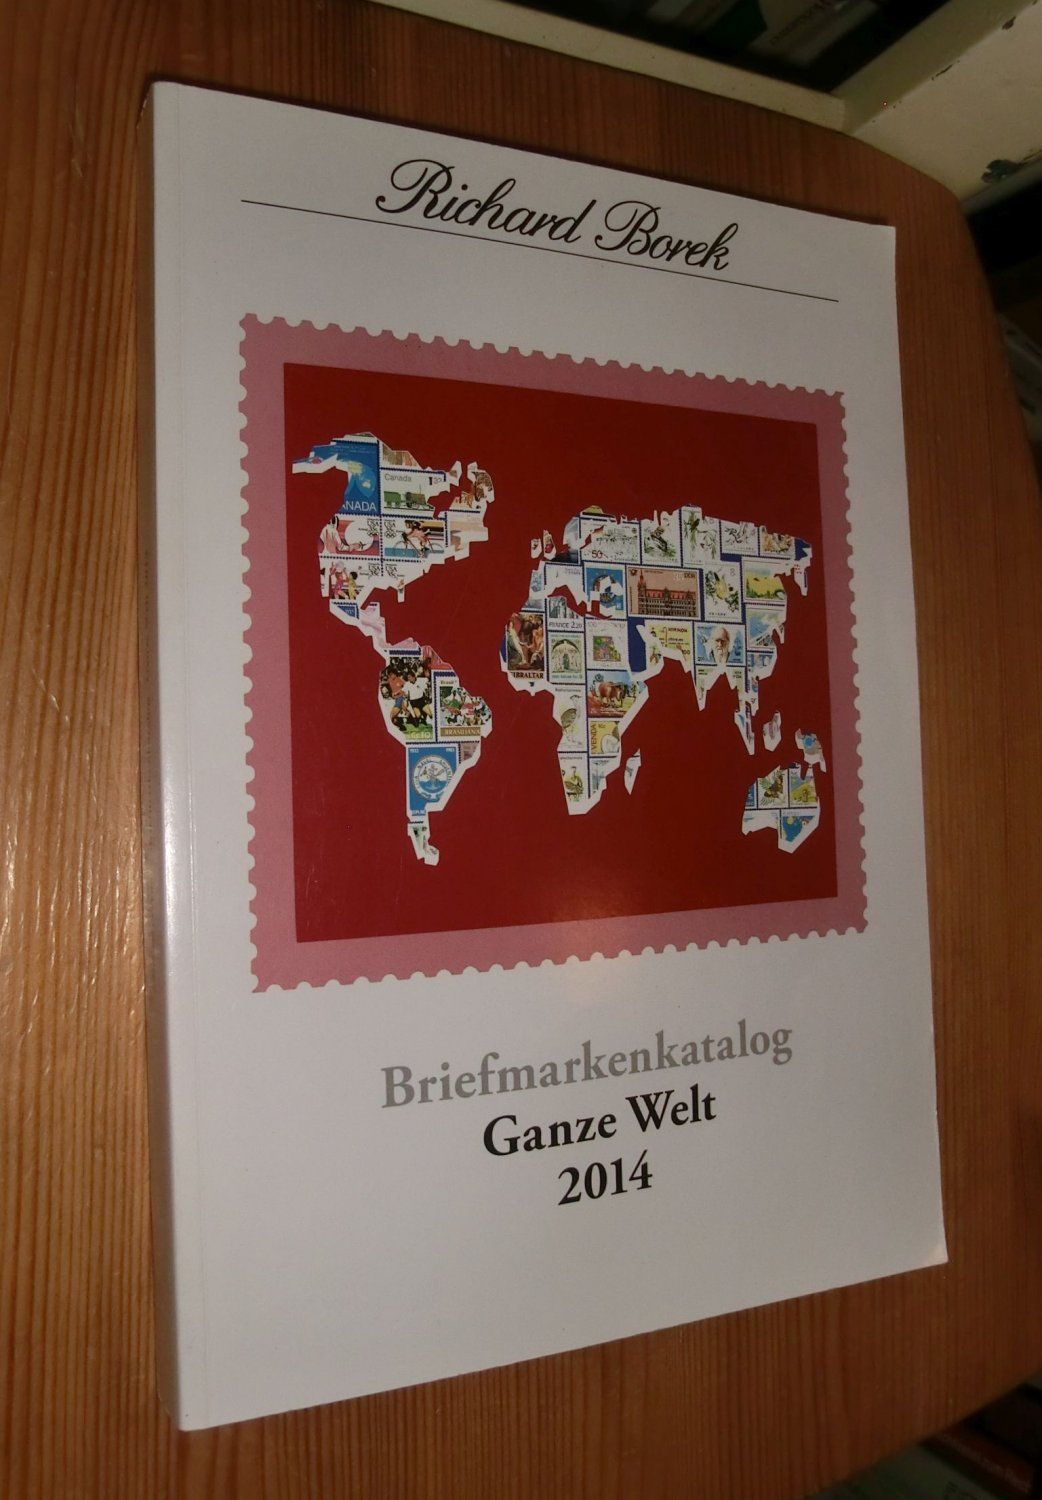 Briefmarkenkatolog - Ganze Welt 2014 - Borek, Richard